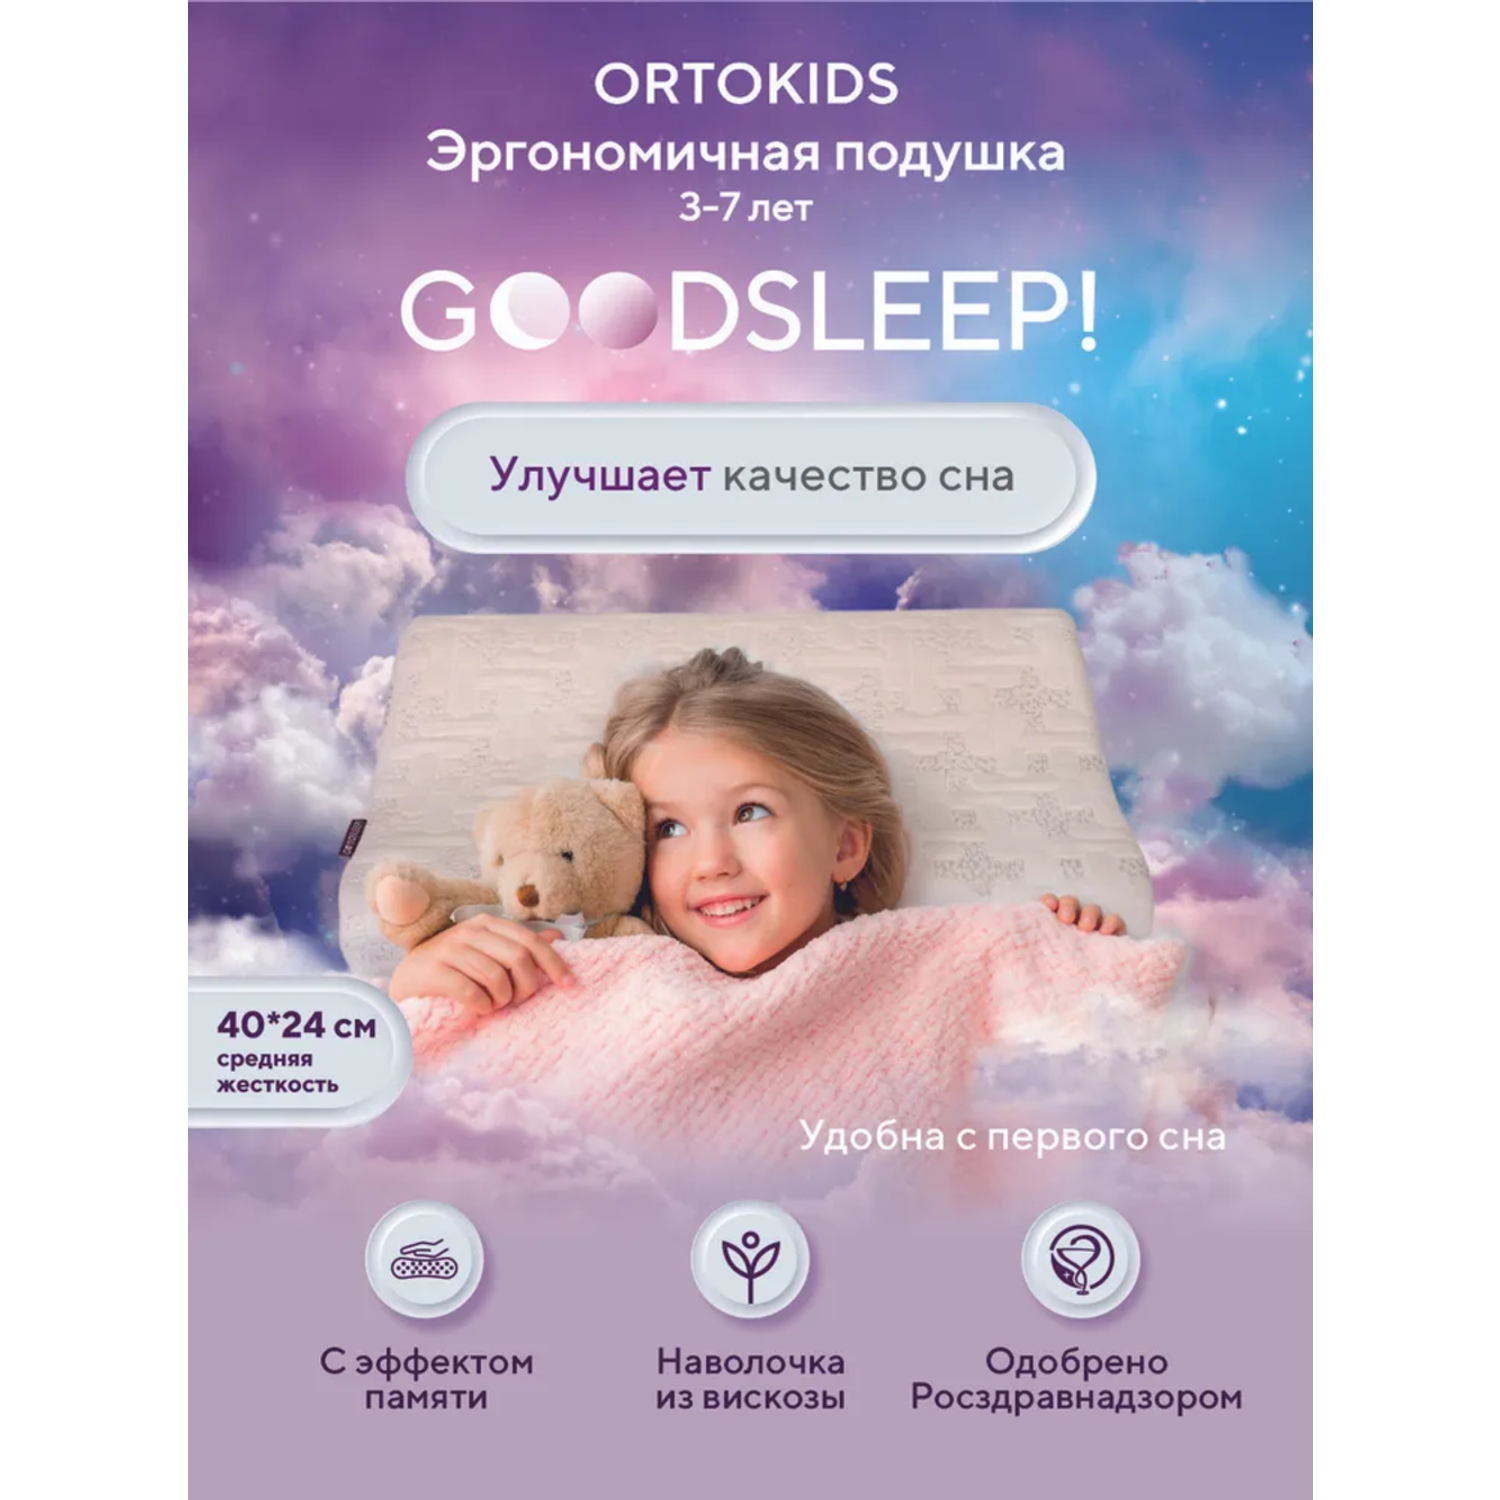 Ортопедическая подушка Goodsleep! для детей от 3-х лет - фото 3